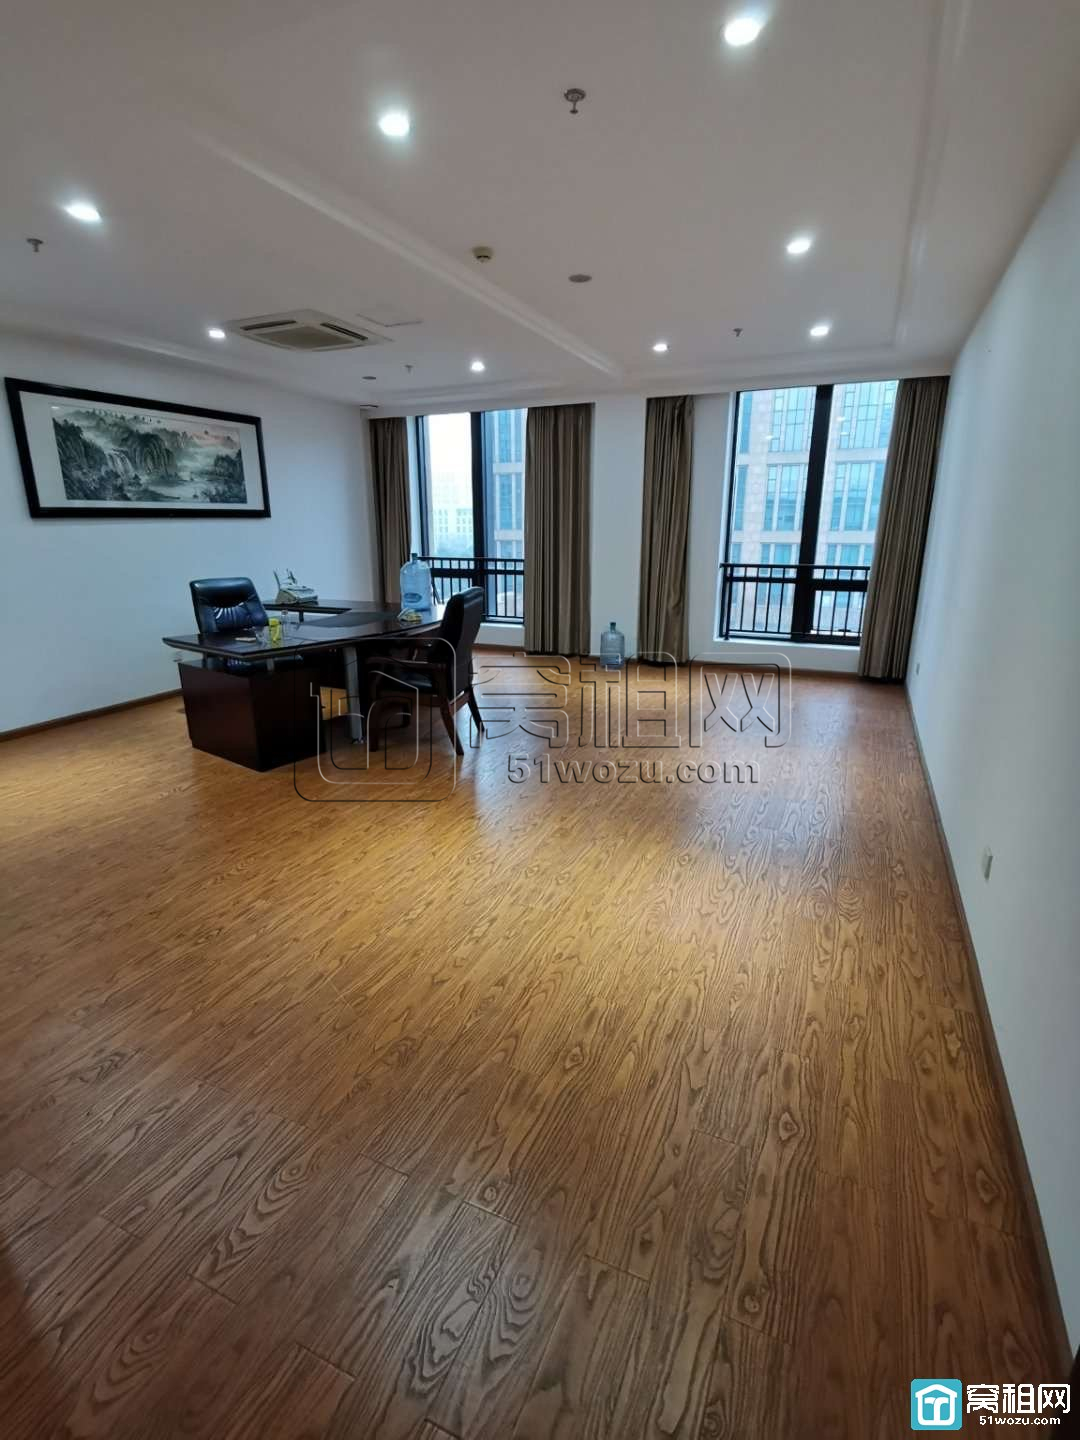 宁波高新区研发园区5楼一套面积55平米办公室出租(图2)